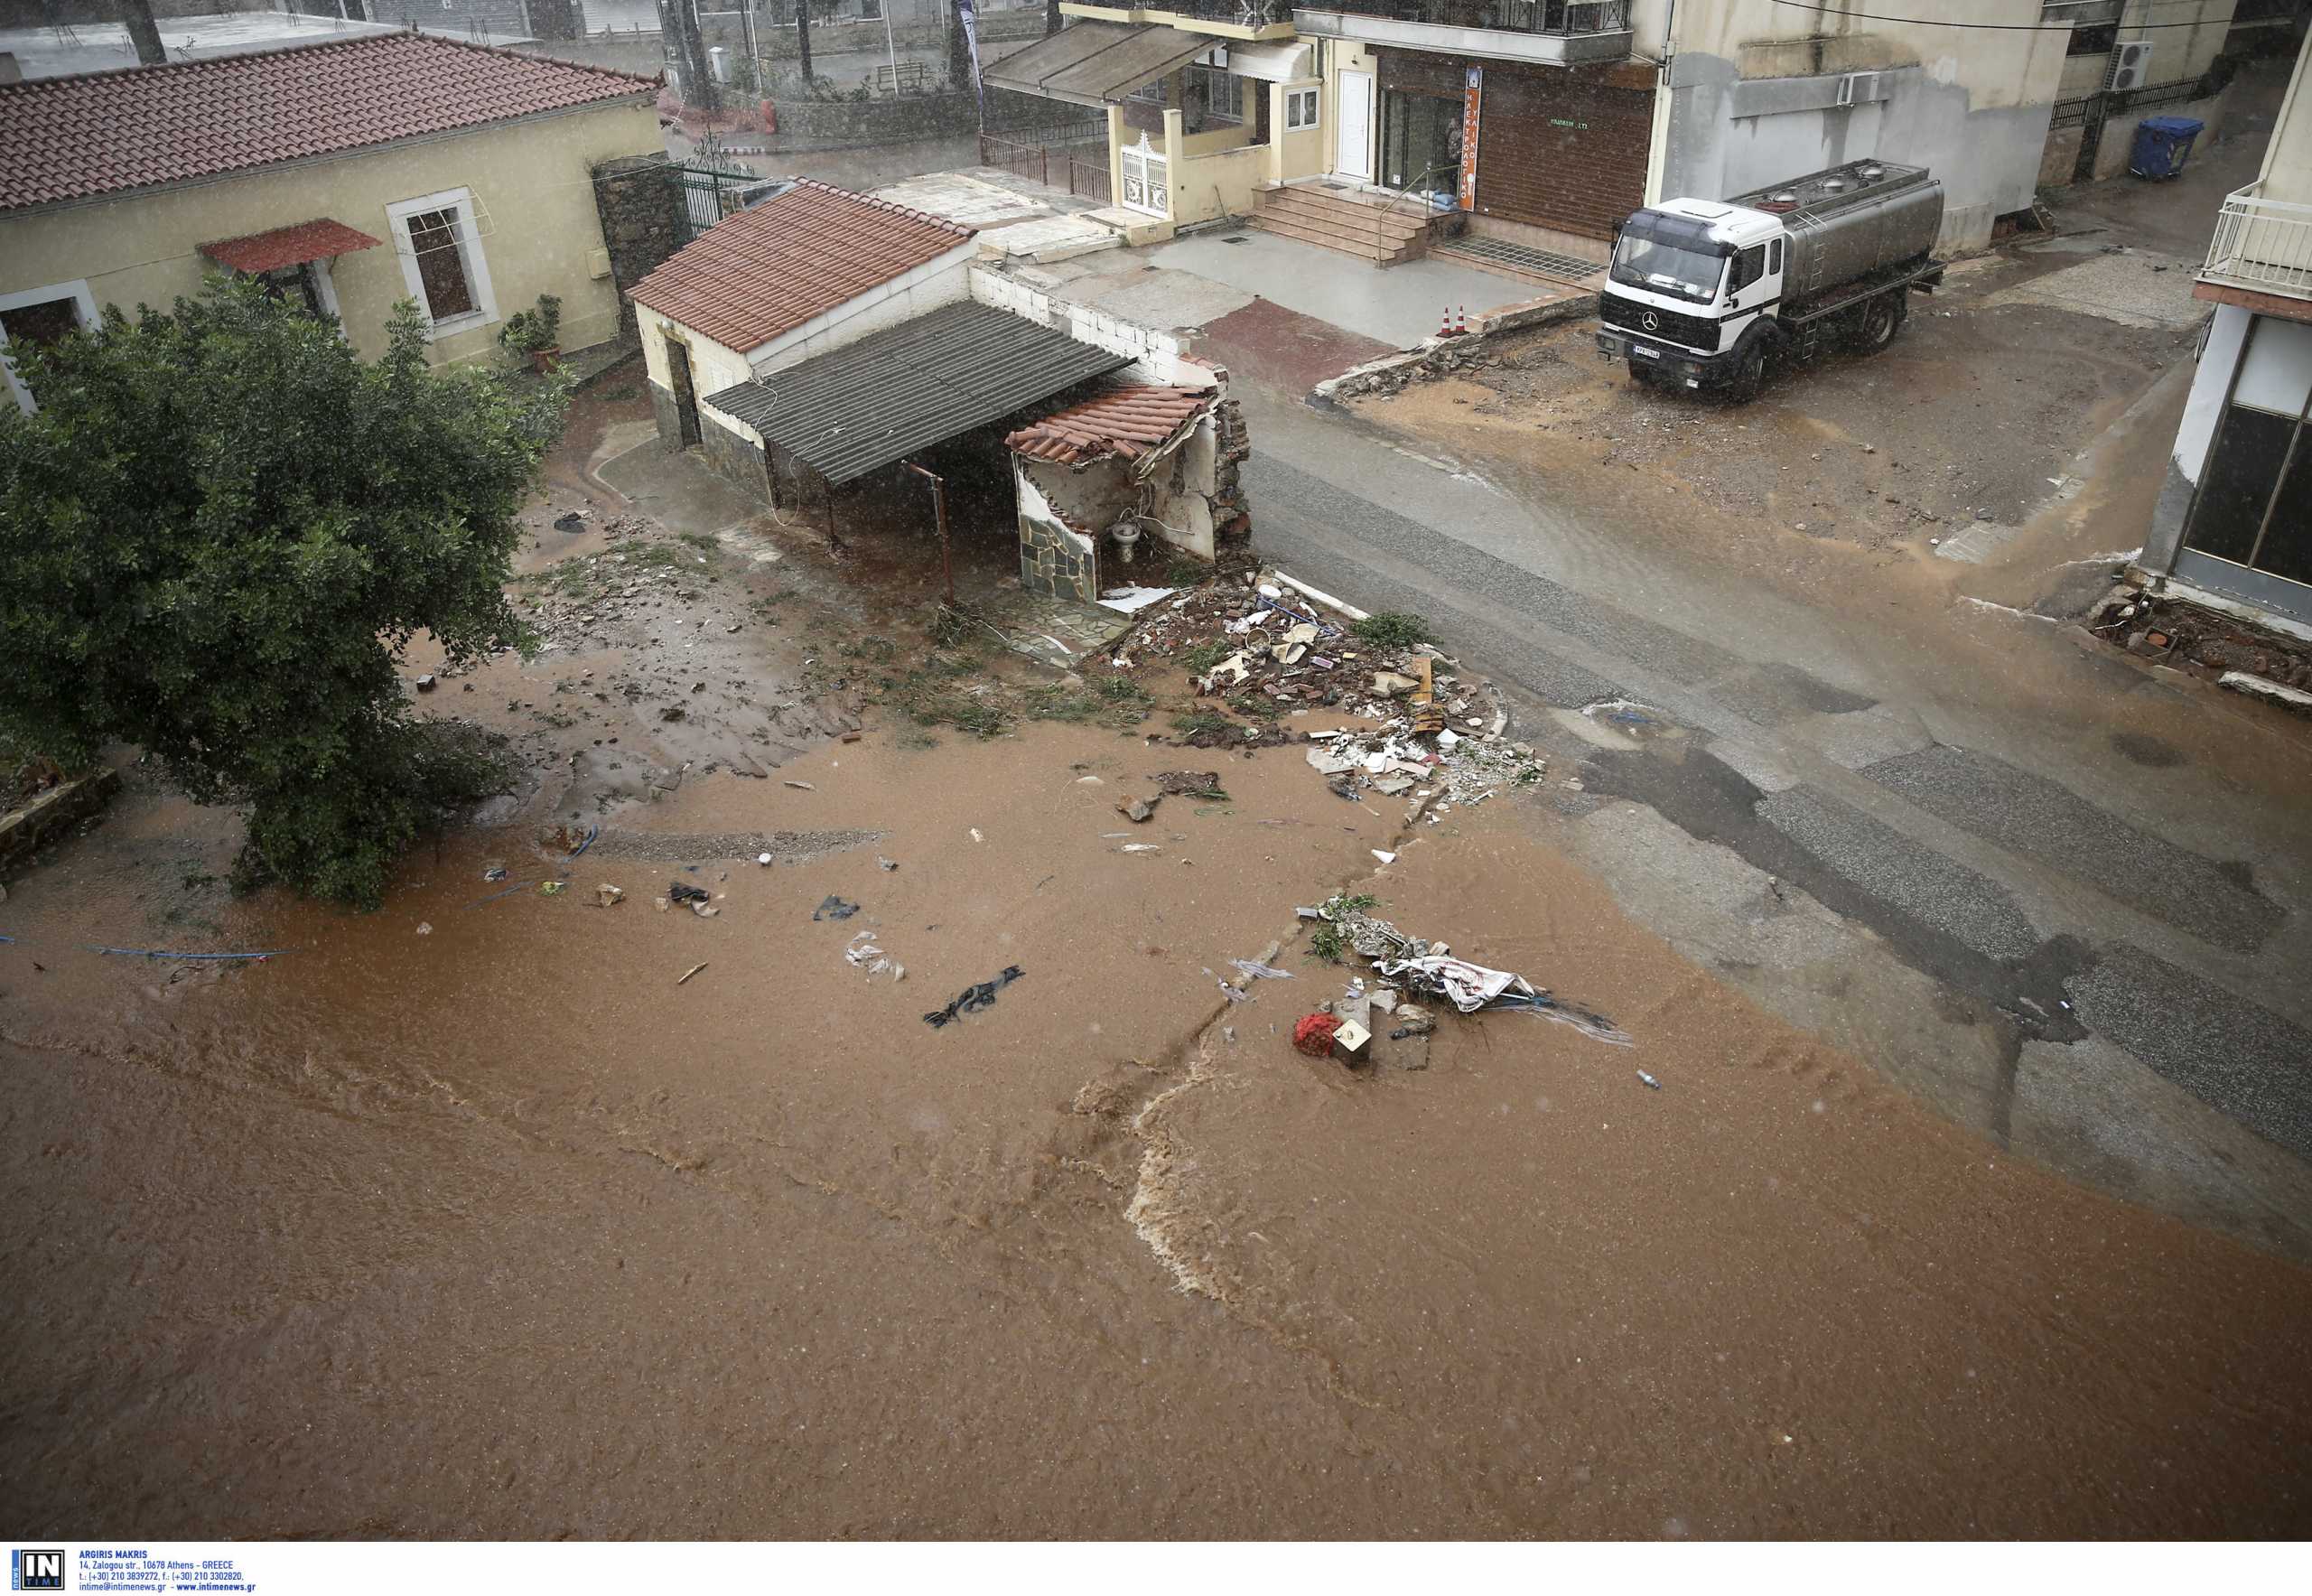 Μάνδρα: Ξεκινούν οι απολογίες για τις φονικές πλημμύρες – Τι θα καταθέσει η Ρένα Δούρου